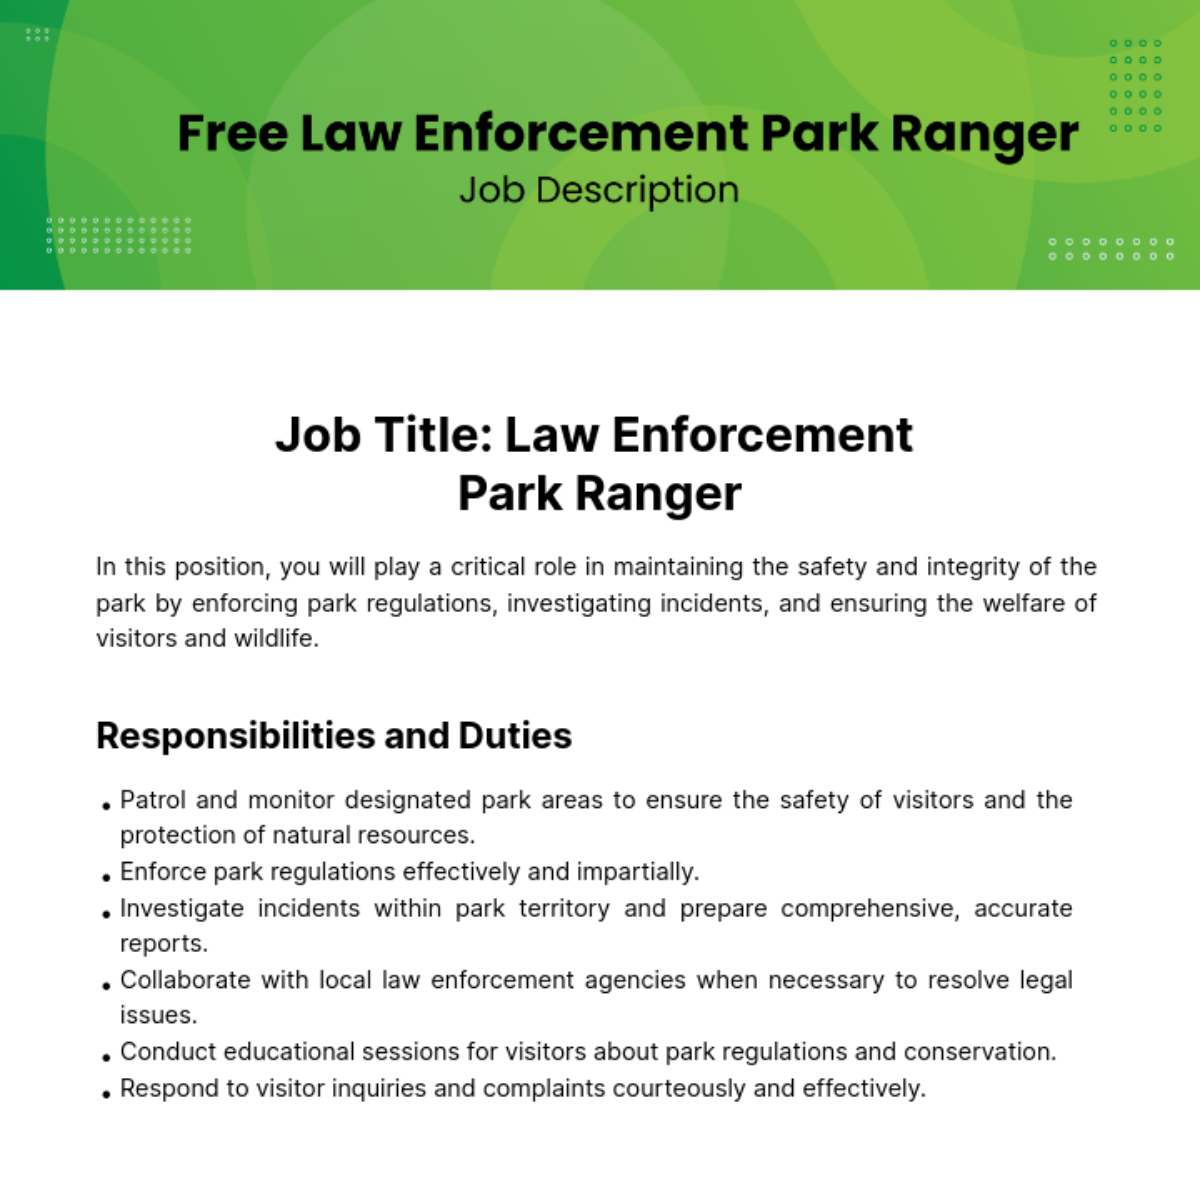 Free Law Enforcement Park Ranger Job Description Template